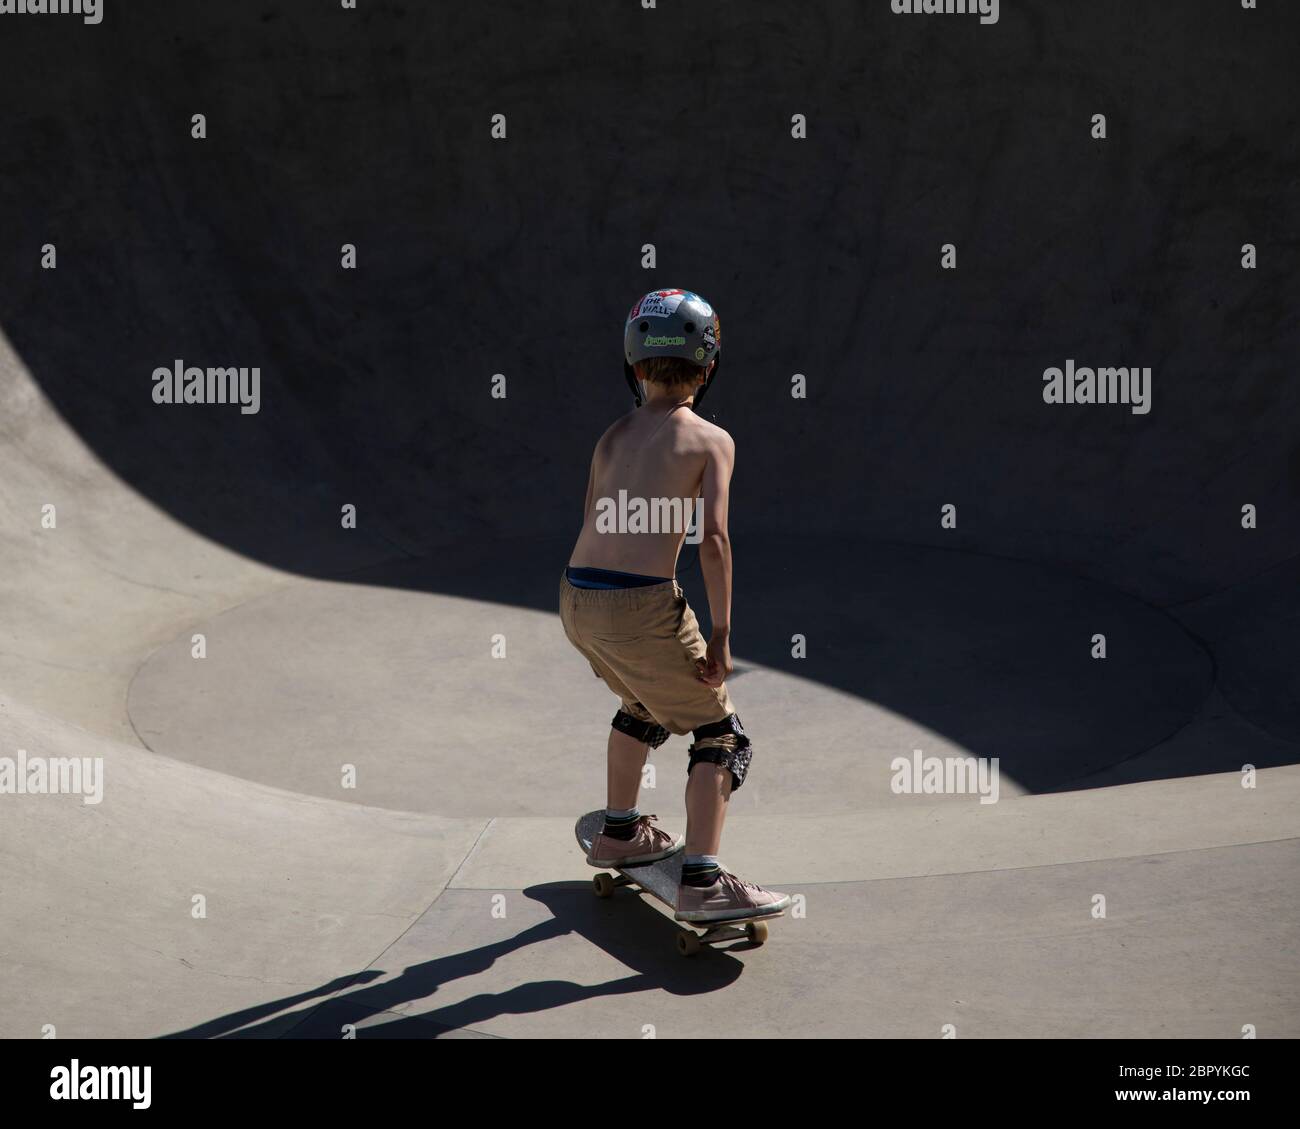 Un garçon sur un skateboard est sur le point d'entrer dans le bol dans un parc de skate Banque D'Images